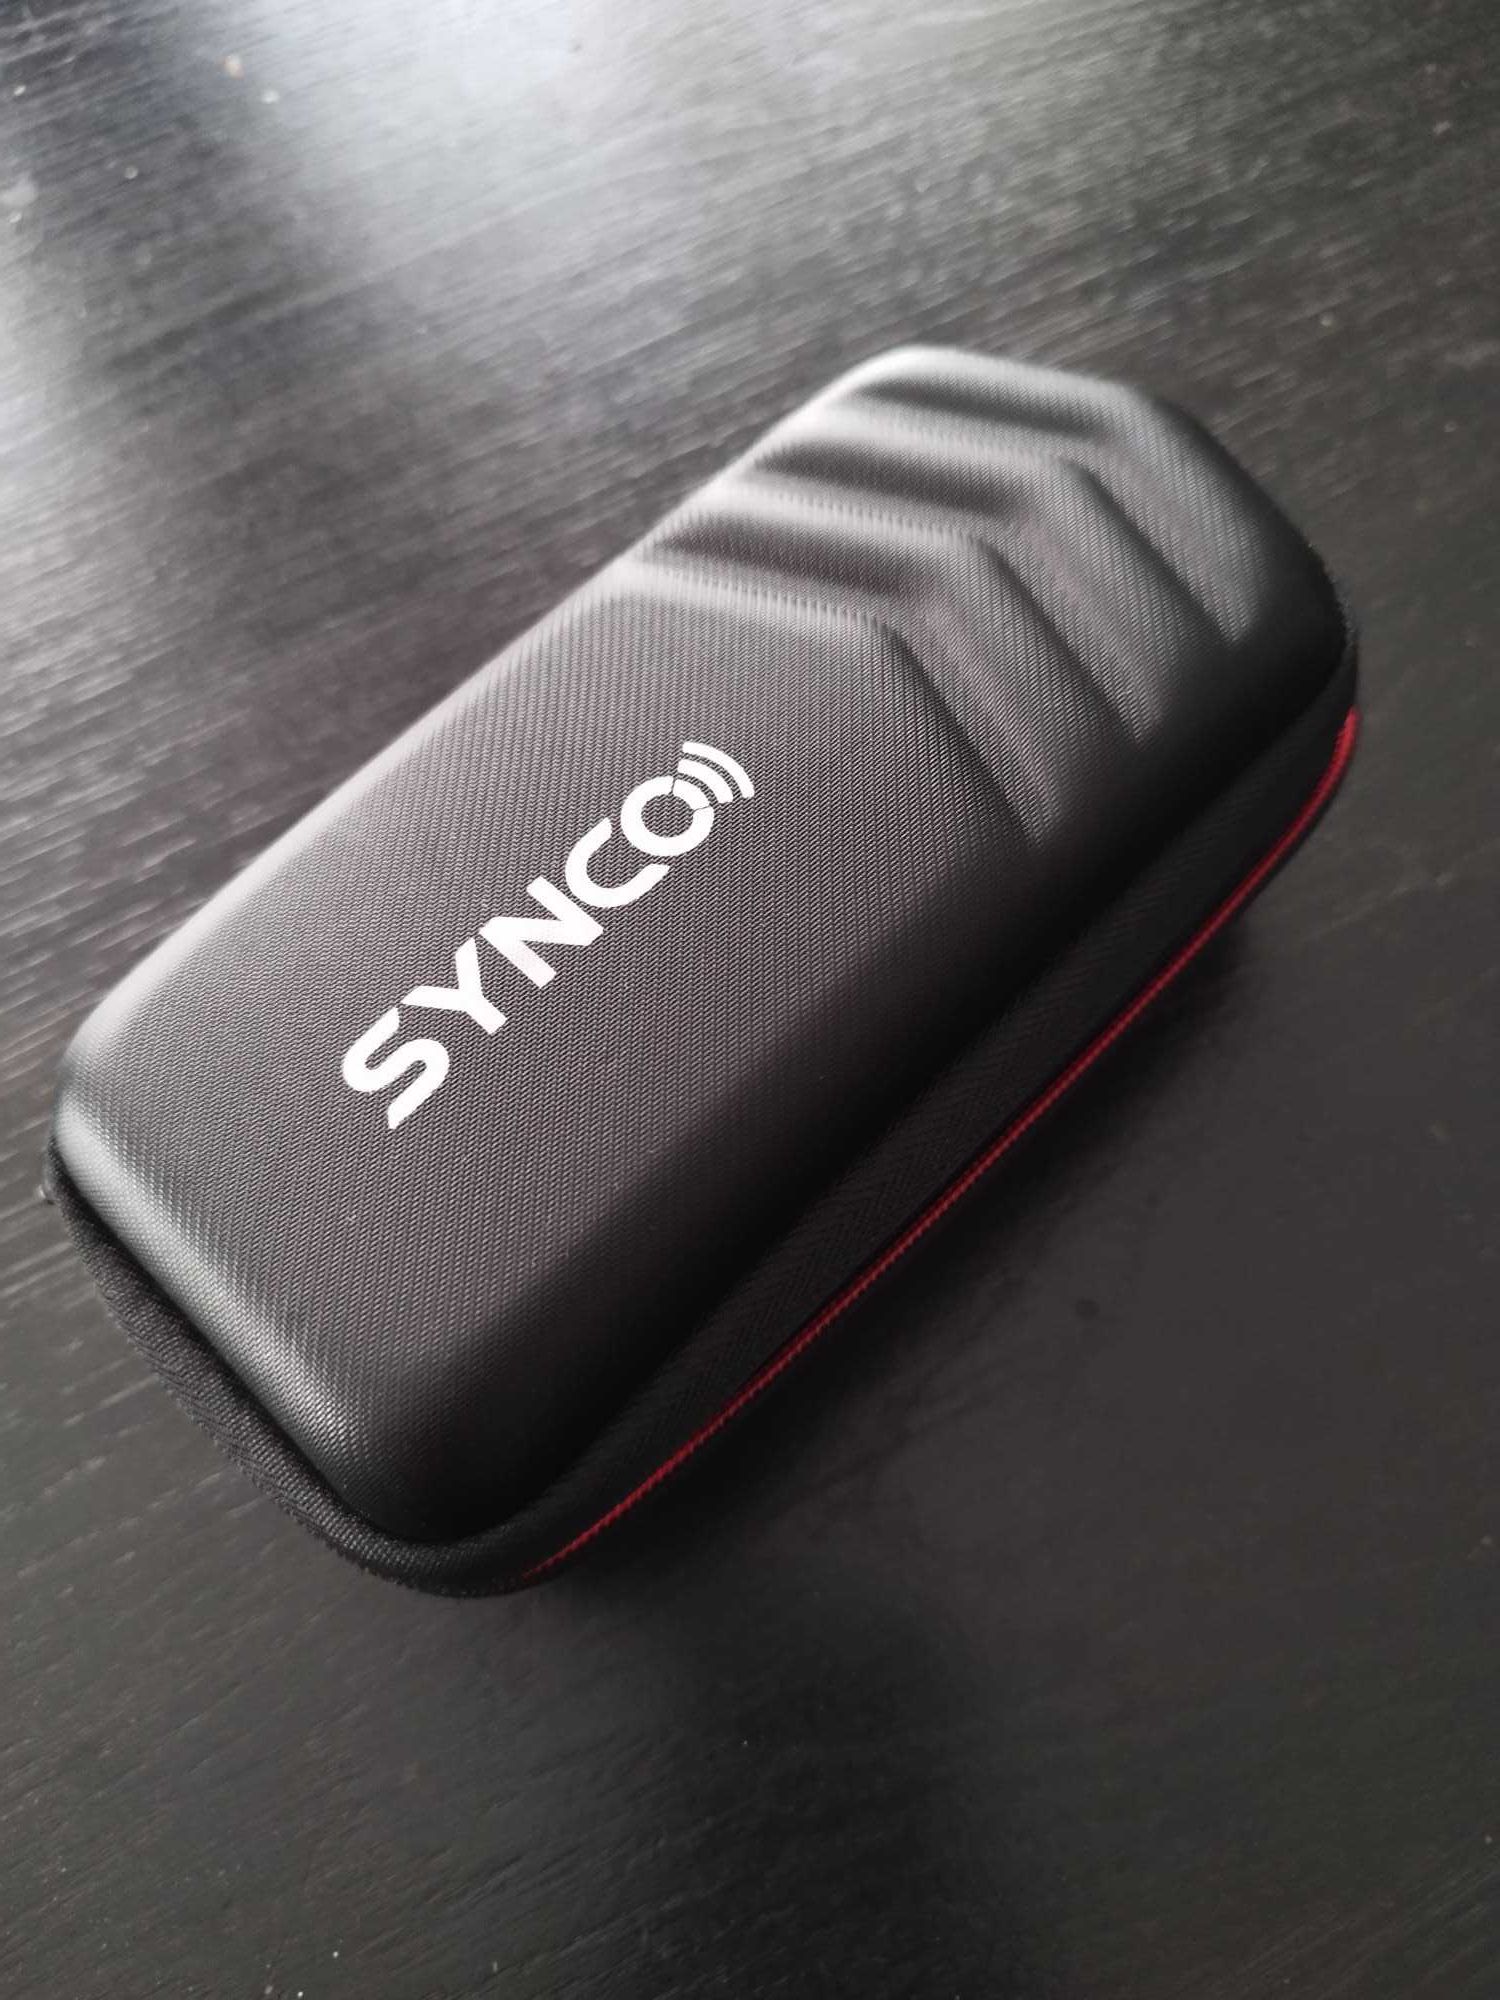 Synco G2  Lavaliera Wireless cu microfon incorporat